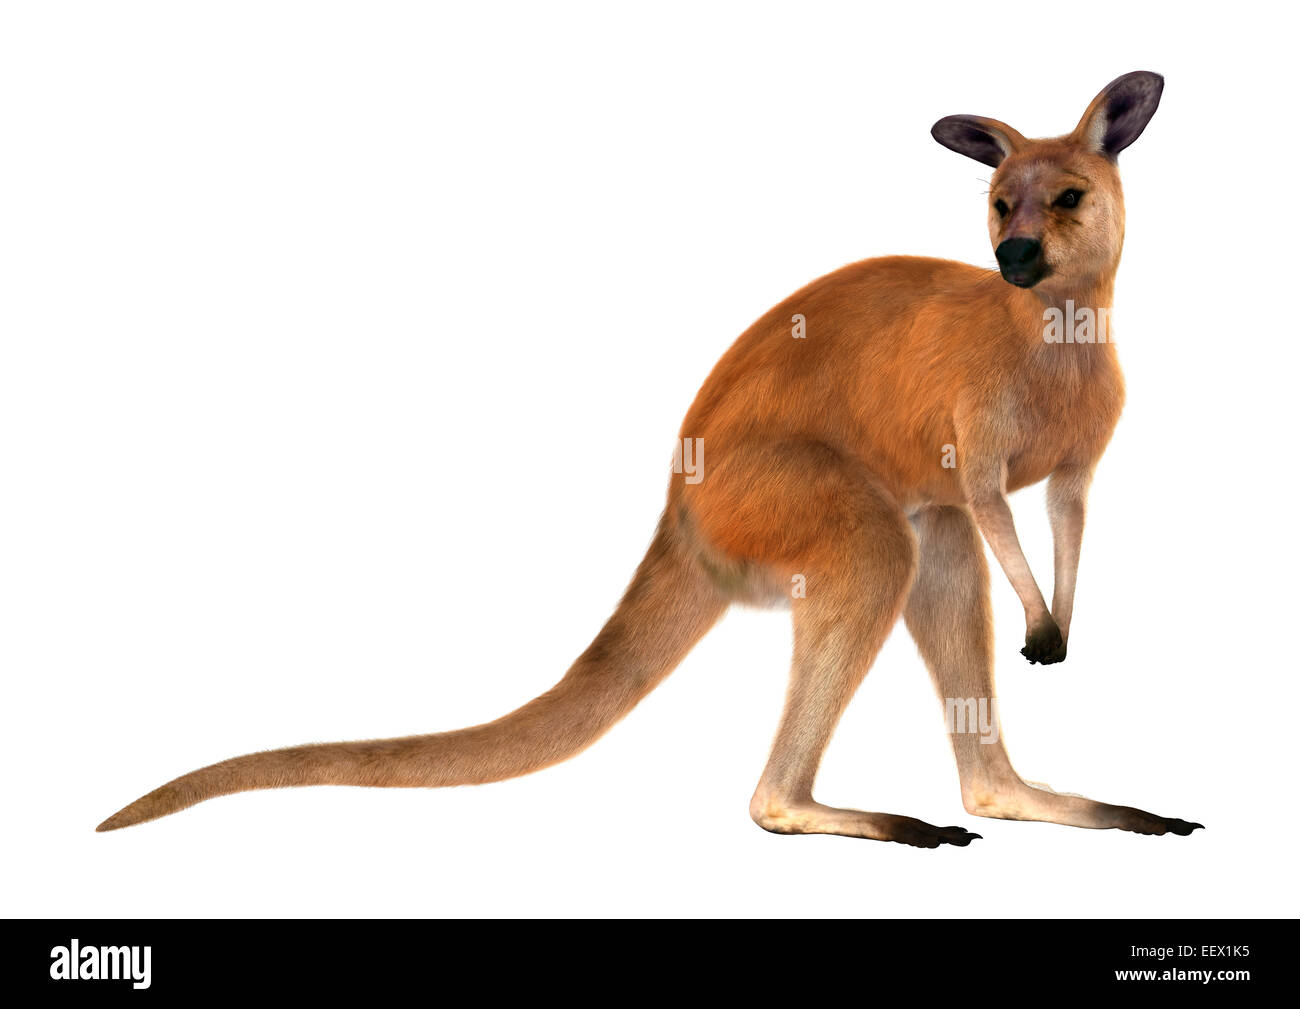 Chào đón hình ảnh chiếc túi đầy mạnh mẽ và dữ dội của một con kangaroo thật đặc biệt: Red kangaroo. Con vật này hiện diện khắp Úc và được coi là biểu tượng của đất nước này. Hãy nhấn vào hình ảnh để tìm hiểu thêm về Red kangaroo và vẻ đẹp của những đại vật hoang dã.